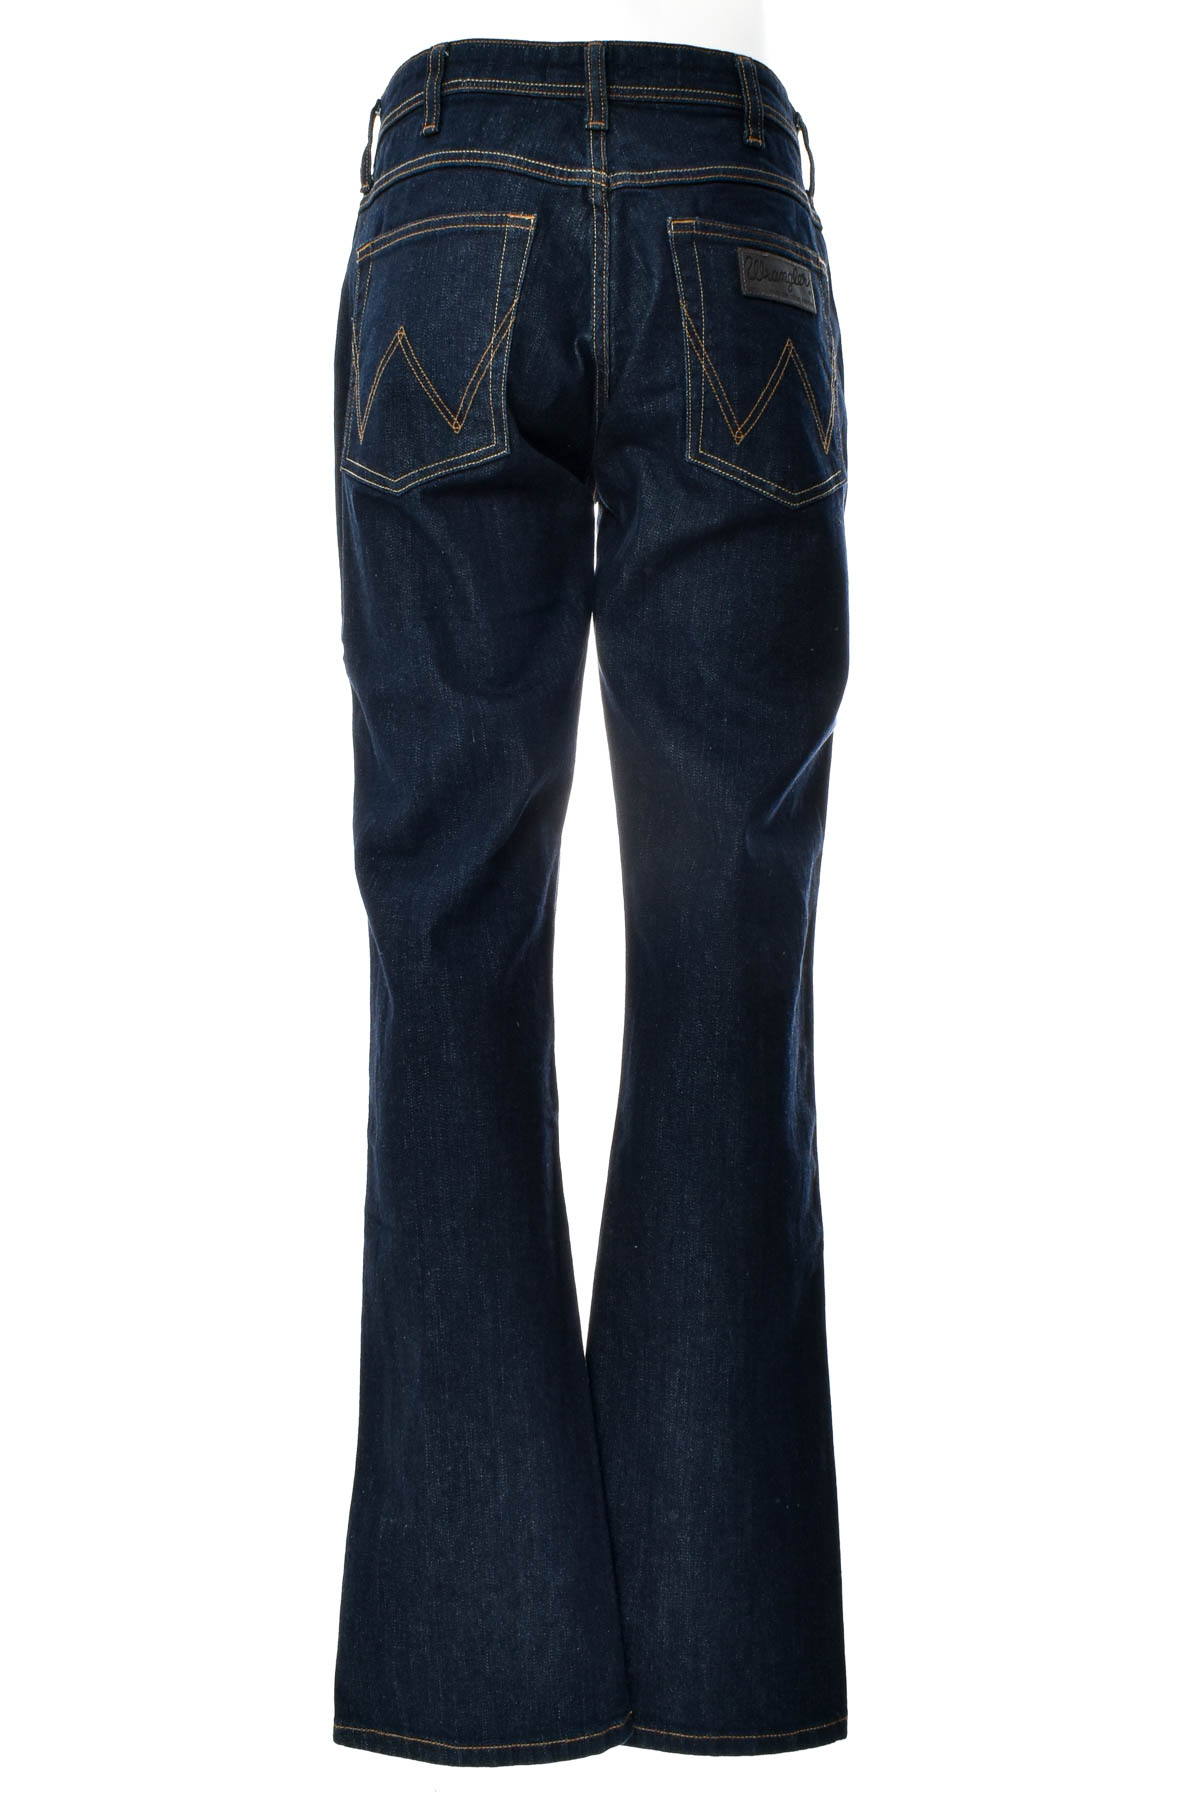 Men's jeans - Wrangler - 1